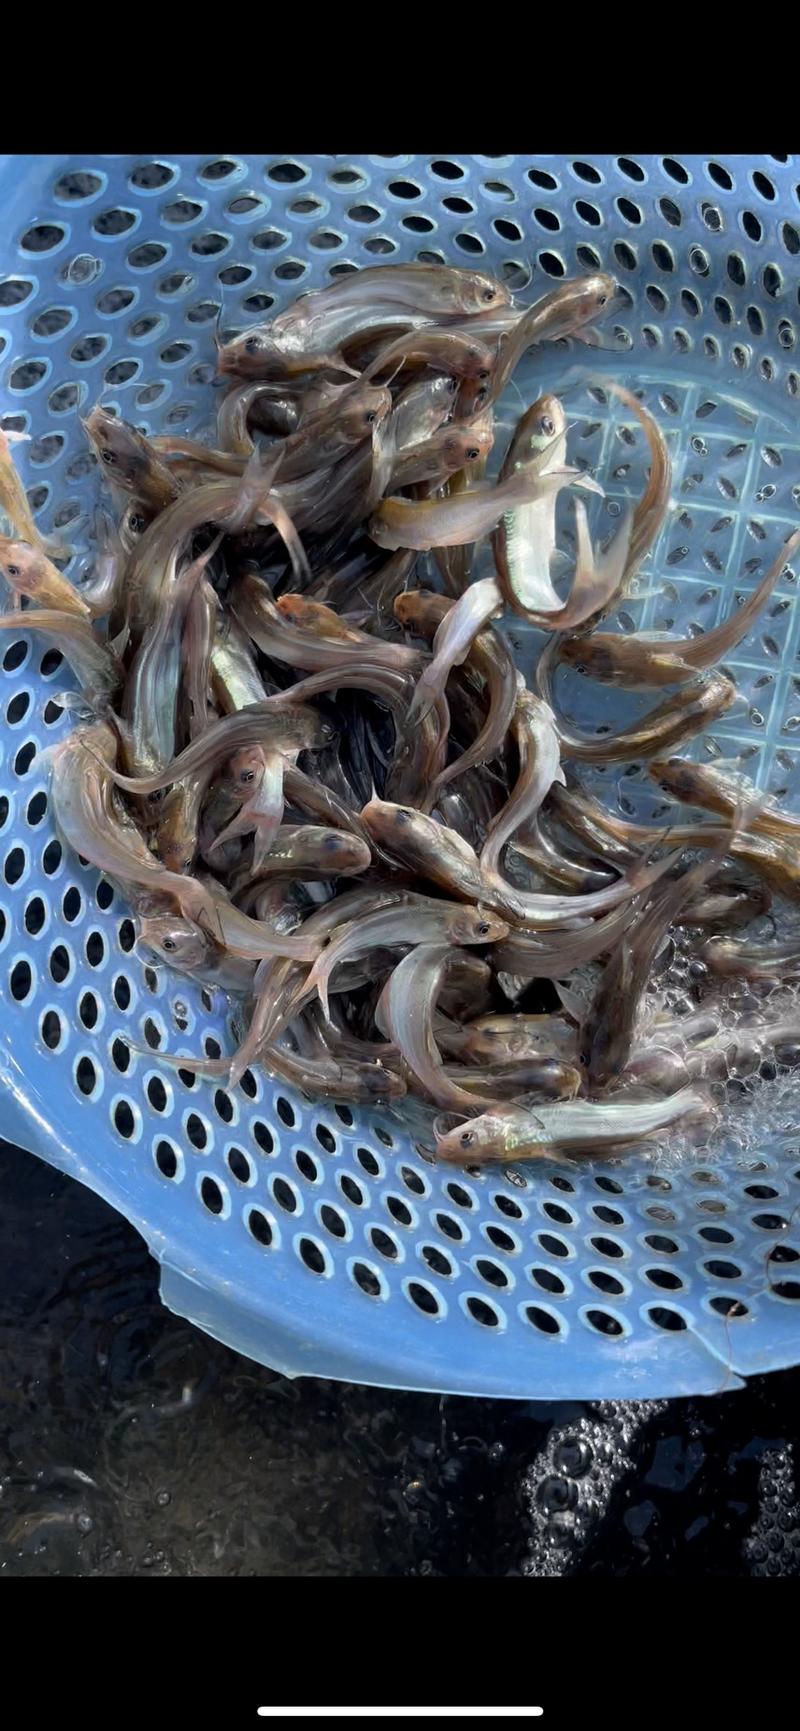 斑点叉尾鮰鱼苗食用清江鱼养殖黔鱼淡水鱼好养殖